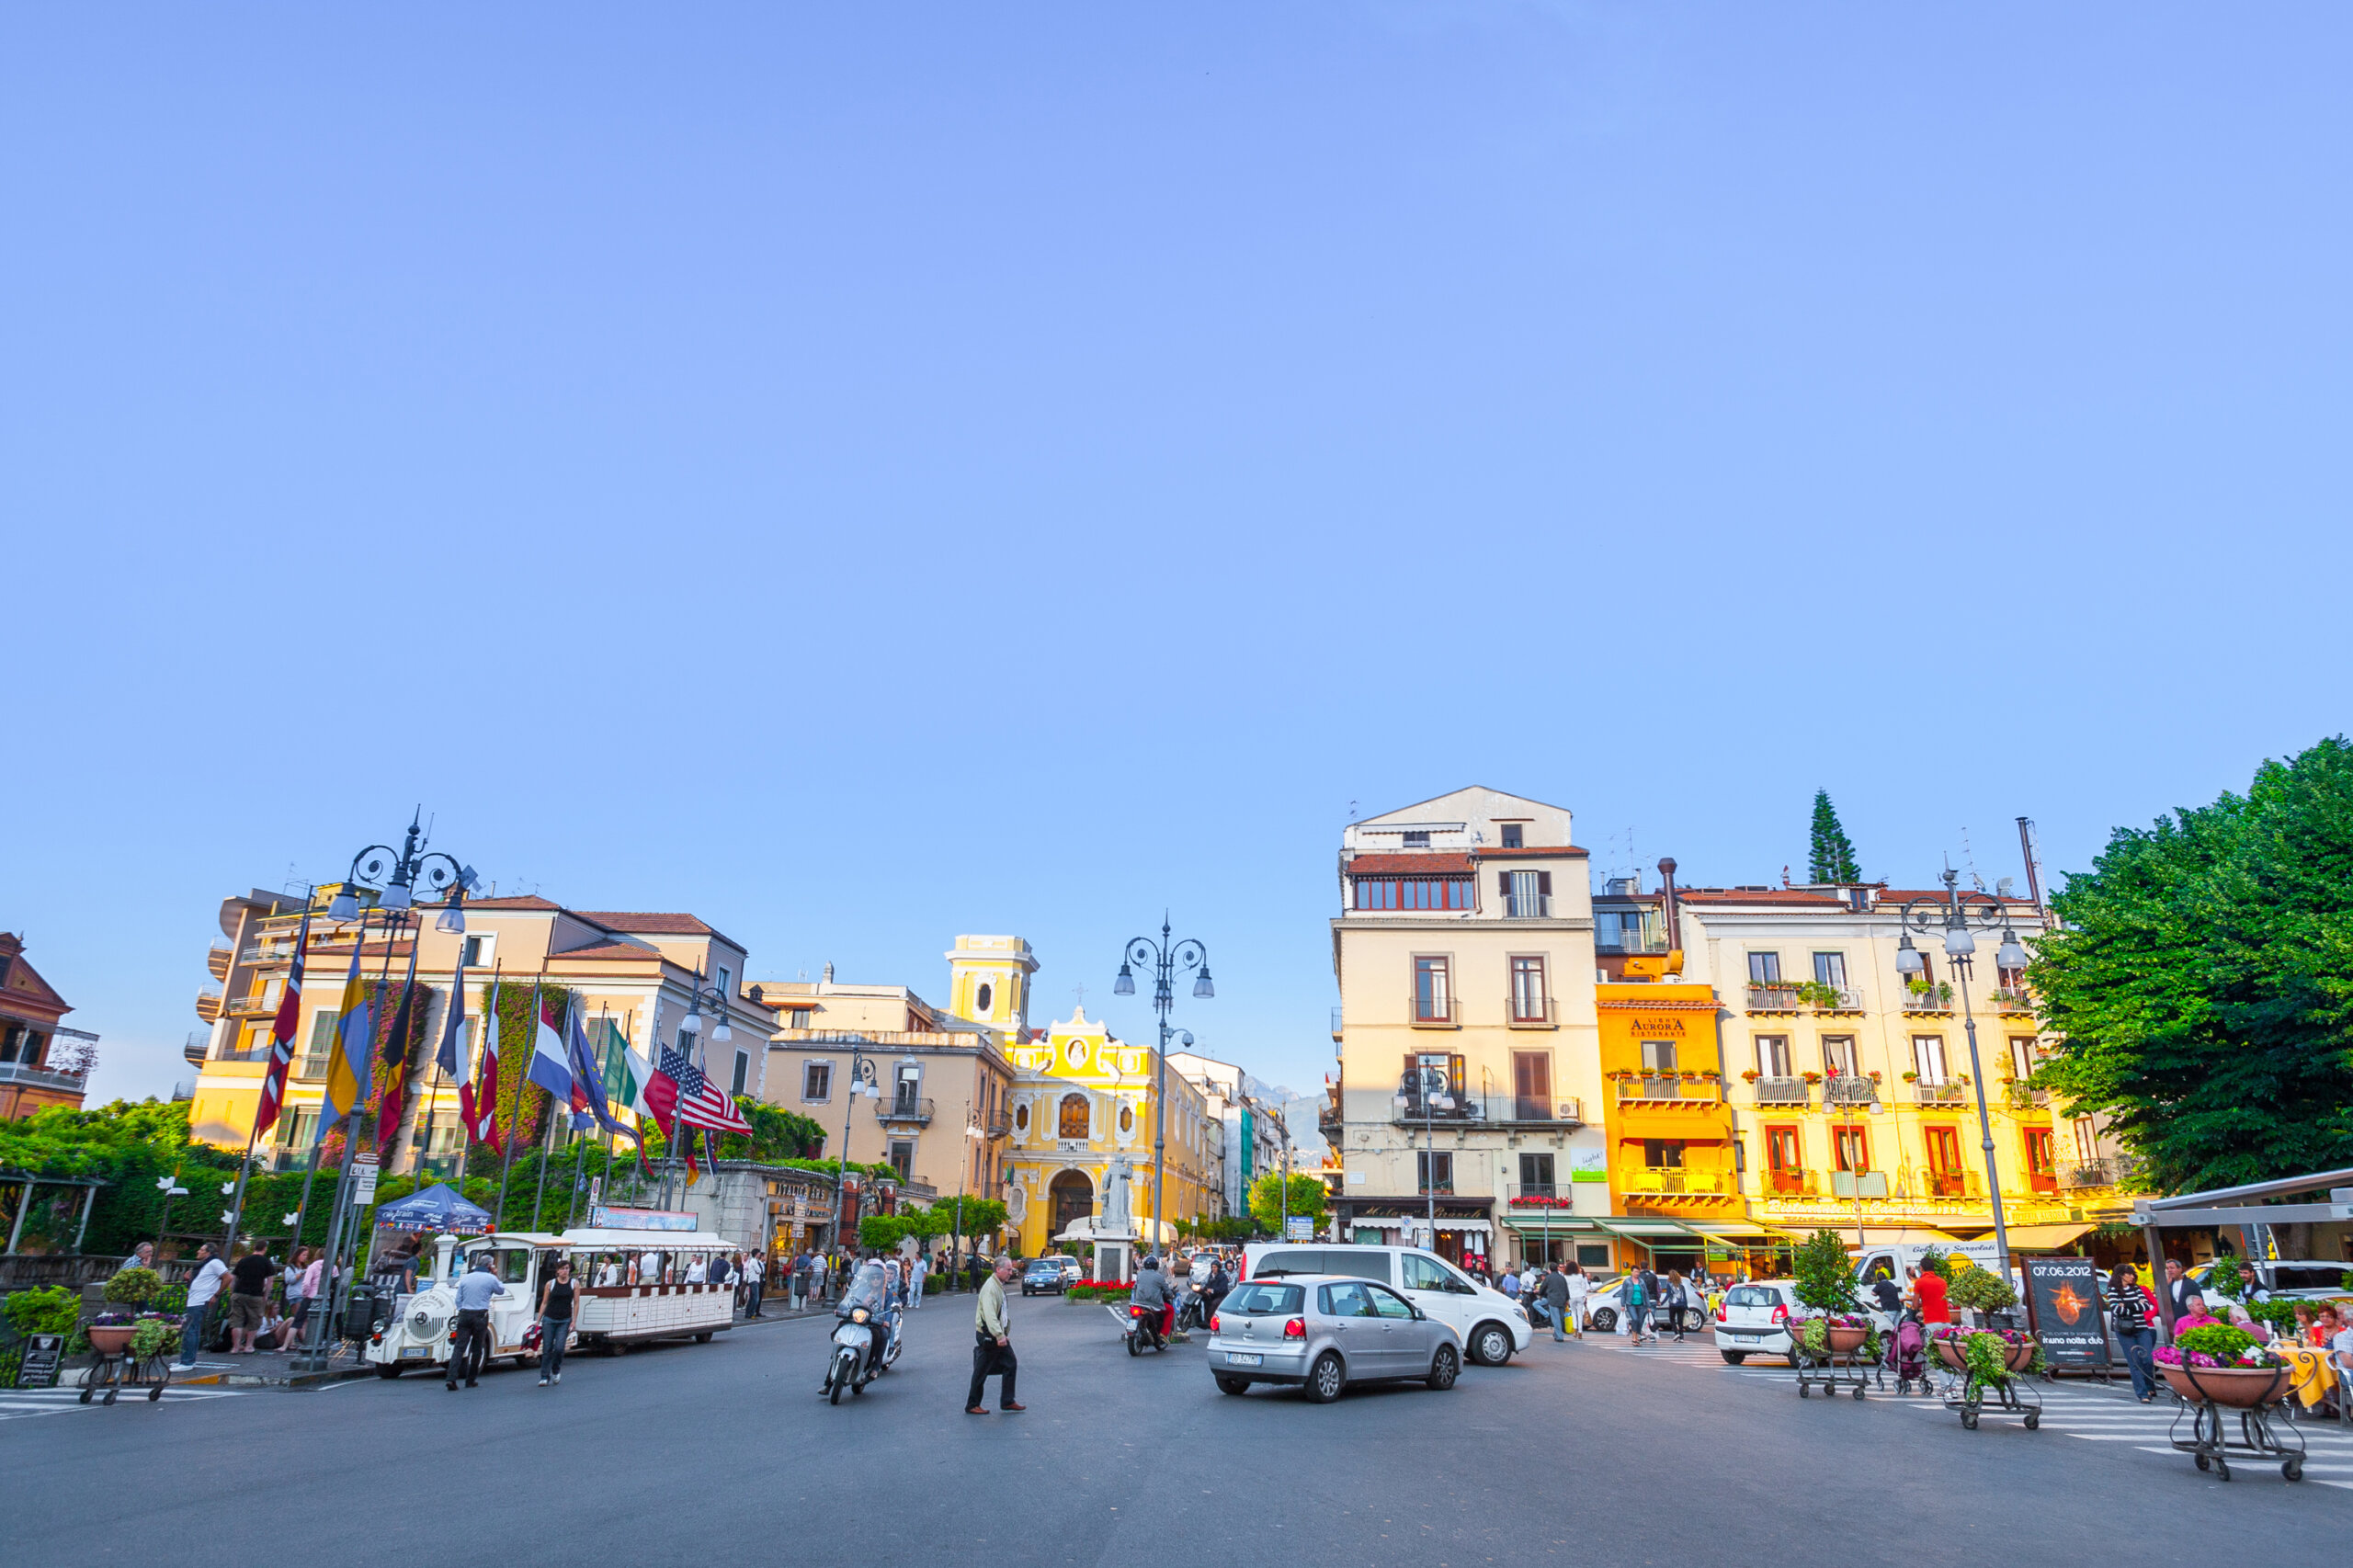 SORRENTO, WŁOCHY - Turyści i okoliczni mieszkańcy cieszą się ciepłym, słonecznym wieczorem w centrum Sorrento, Neapol, Kampania, Włochy. licencja: shutterstock/By Sodel Vladyslav